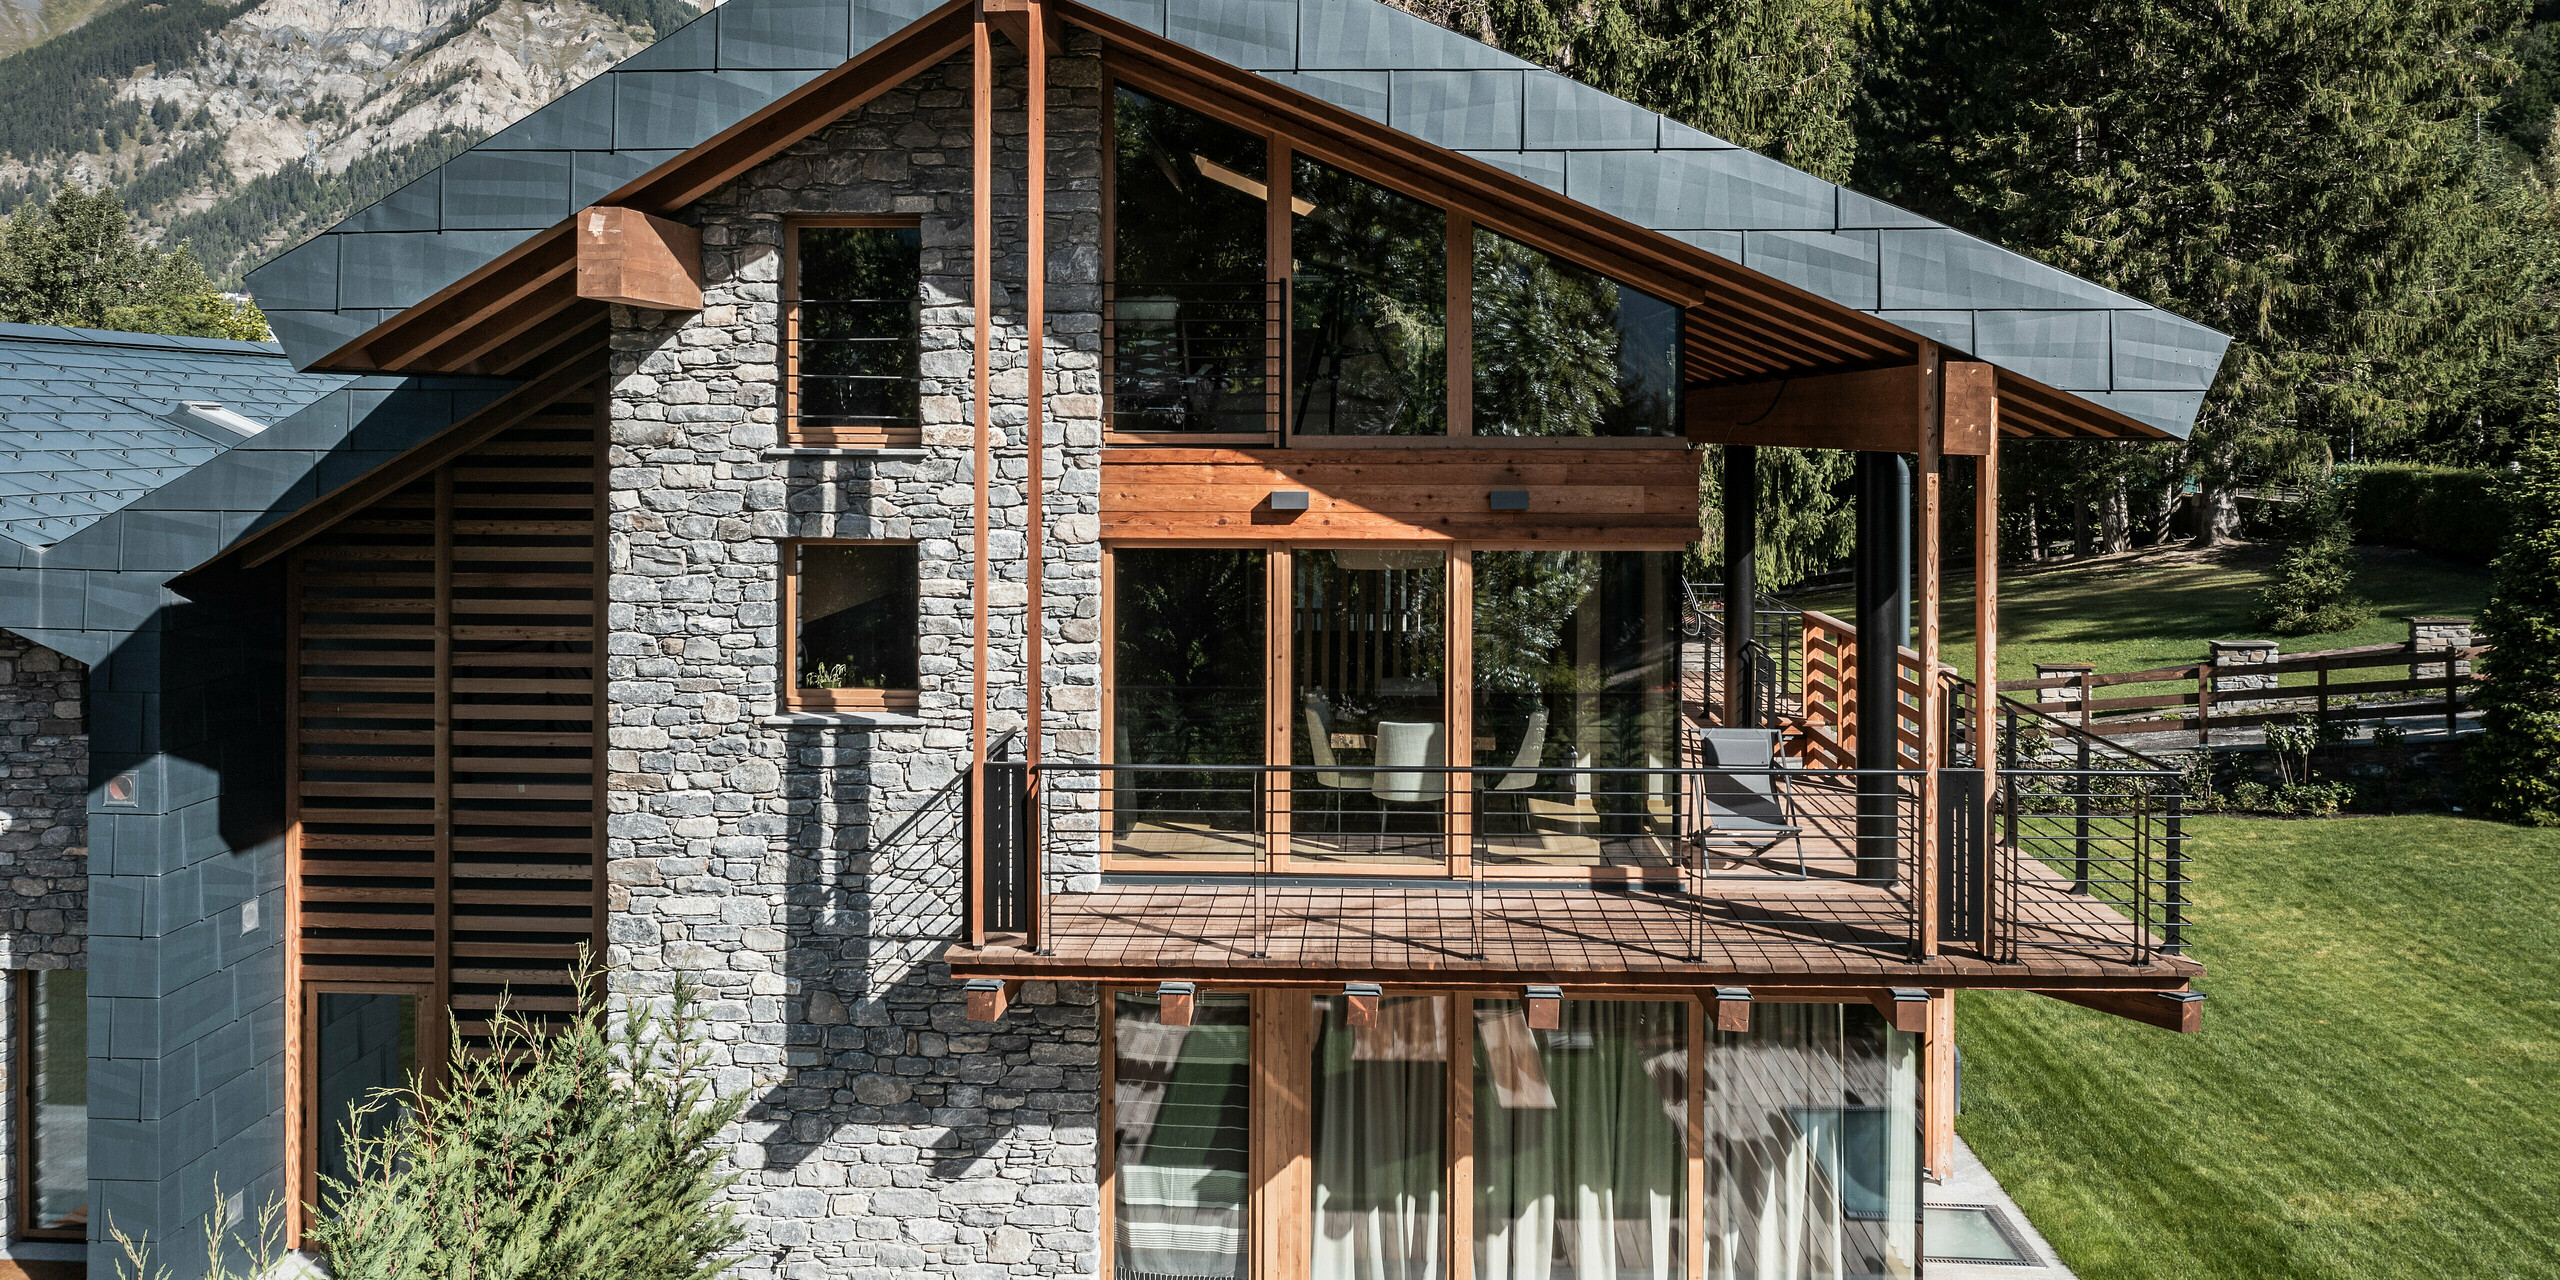 Luxusní vila v Courmayeur s nápadnou kombinací dřeva, kamene a PREFA hliníku v podobě střešních a fasádních panelů FX.12 v barvě P.10 břidlicové. Strukturovaný fasádní obklad a velká čela oken nabízejí přirozenou estetiku. Velký krytý dřevěný balkon s výhledem na alpskou krajinu nabízí úchvatný výhled. Pečlivý design se hladce integruje s okolním horským pozadím a vytváří dramatické pozadí.